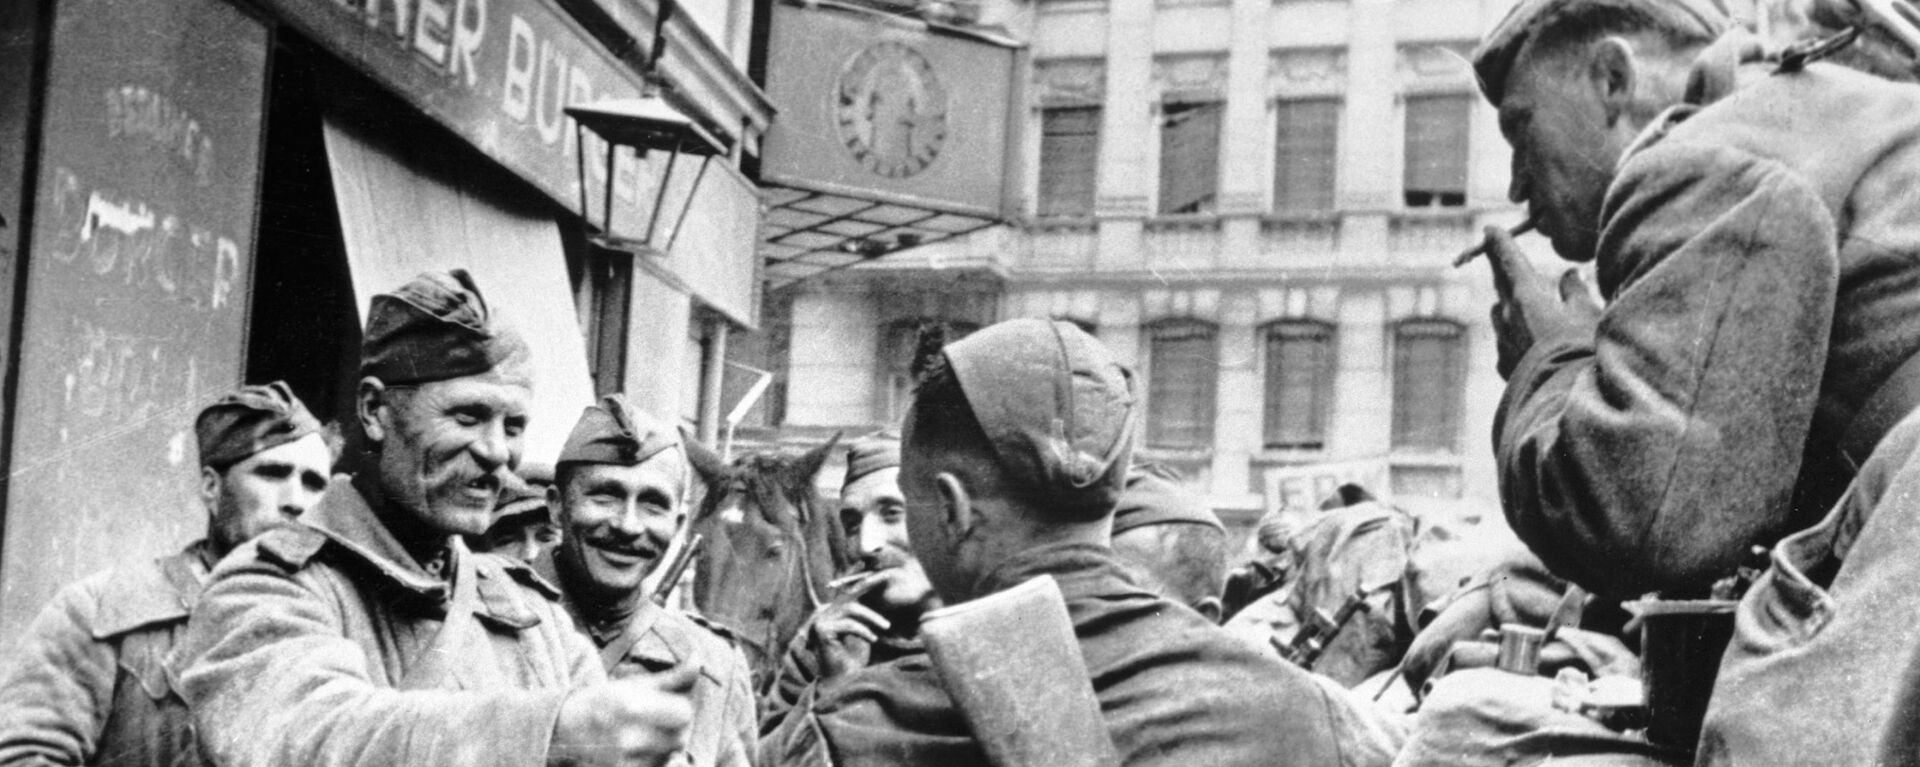 Советские солдаты-освободители празднуют победу в Берлине, 1945 год - Sputnik Тоҷикистон, 1920, 09.05.2021